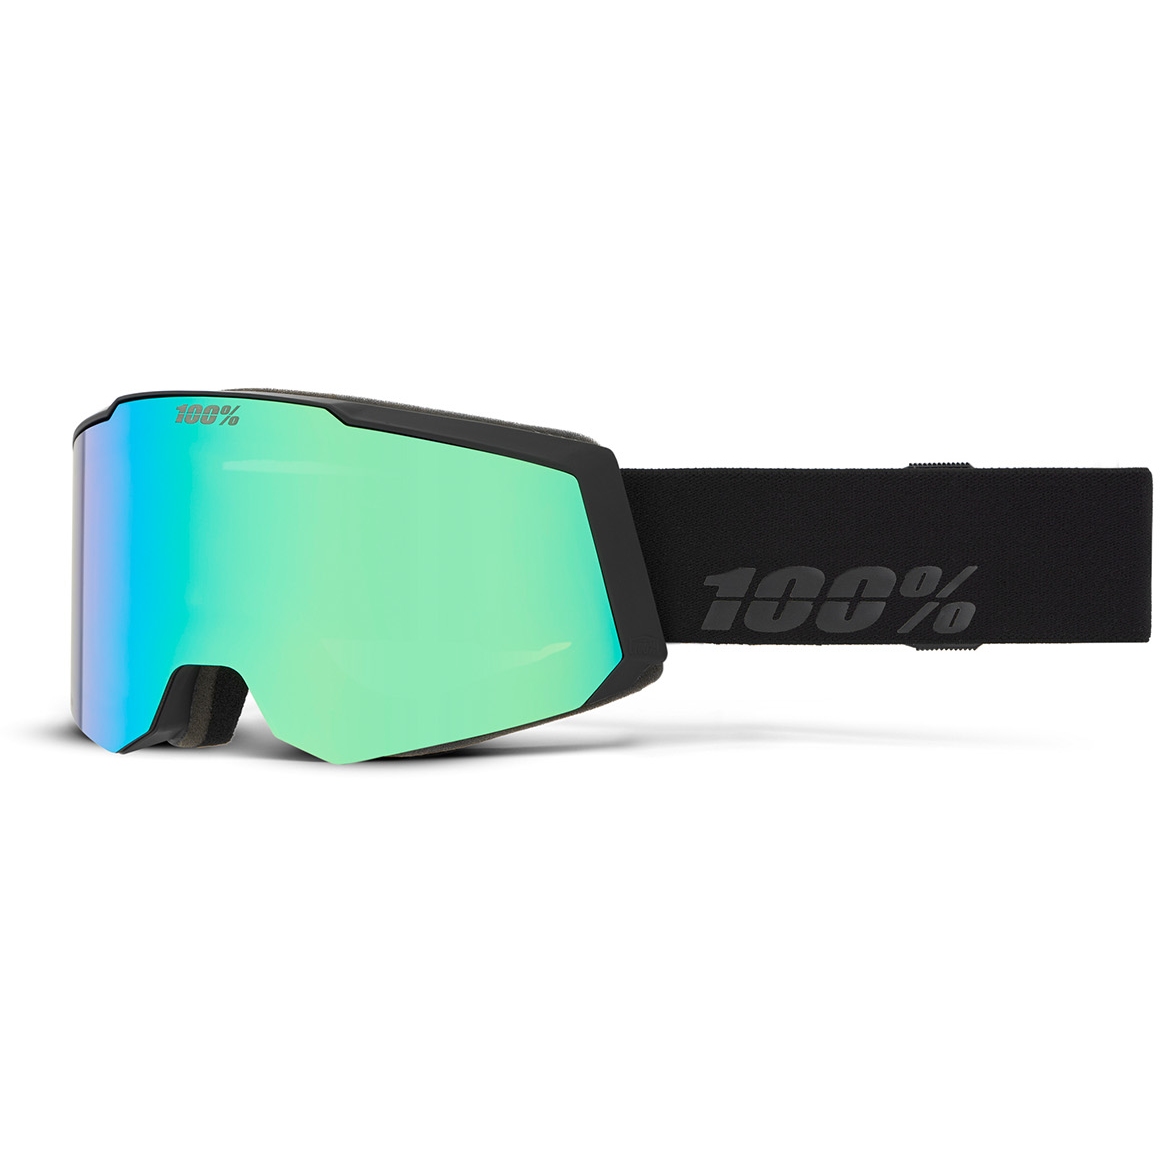 Produktbild von 100% Snowcraft S Ski-Brille - HiPER Mirror Lens - Black/Green / Grey-Blue-Green + Pink-Turquoise